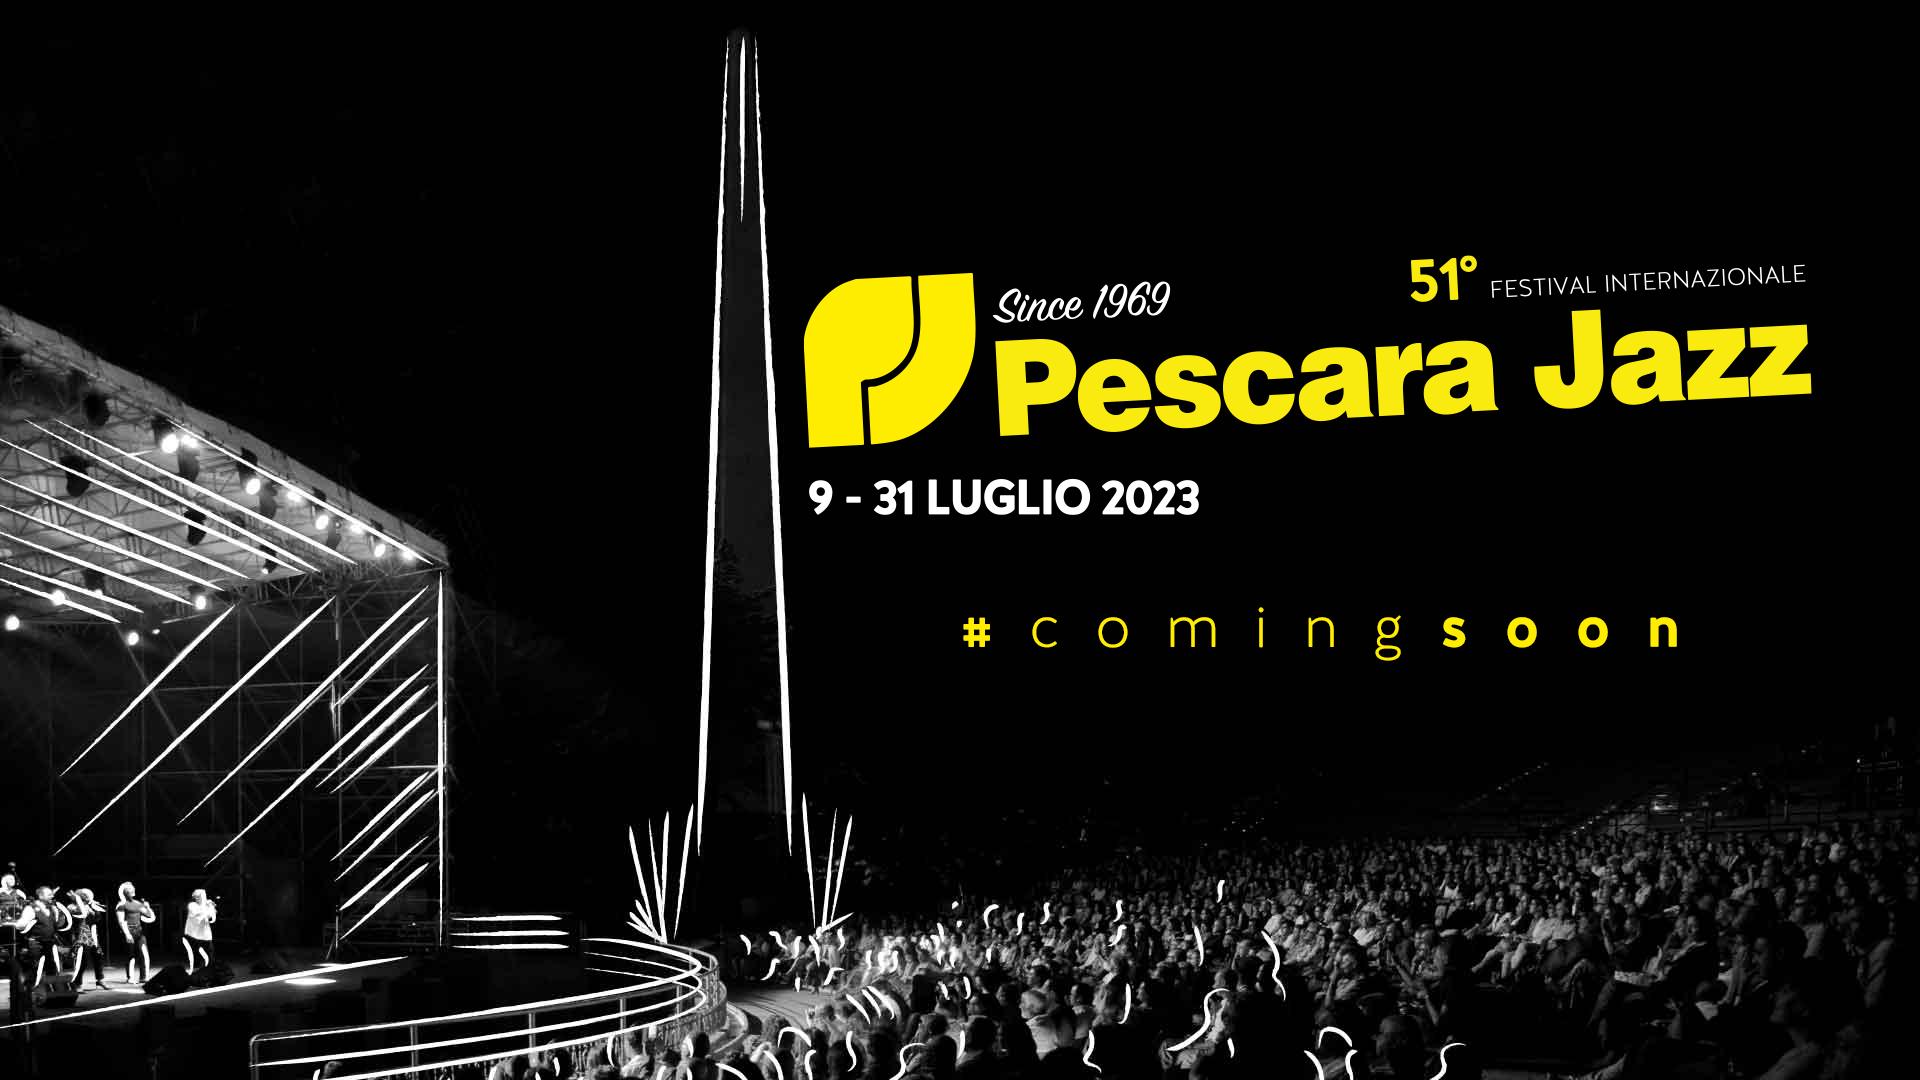 (c) Pescarajazz.com